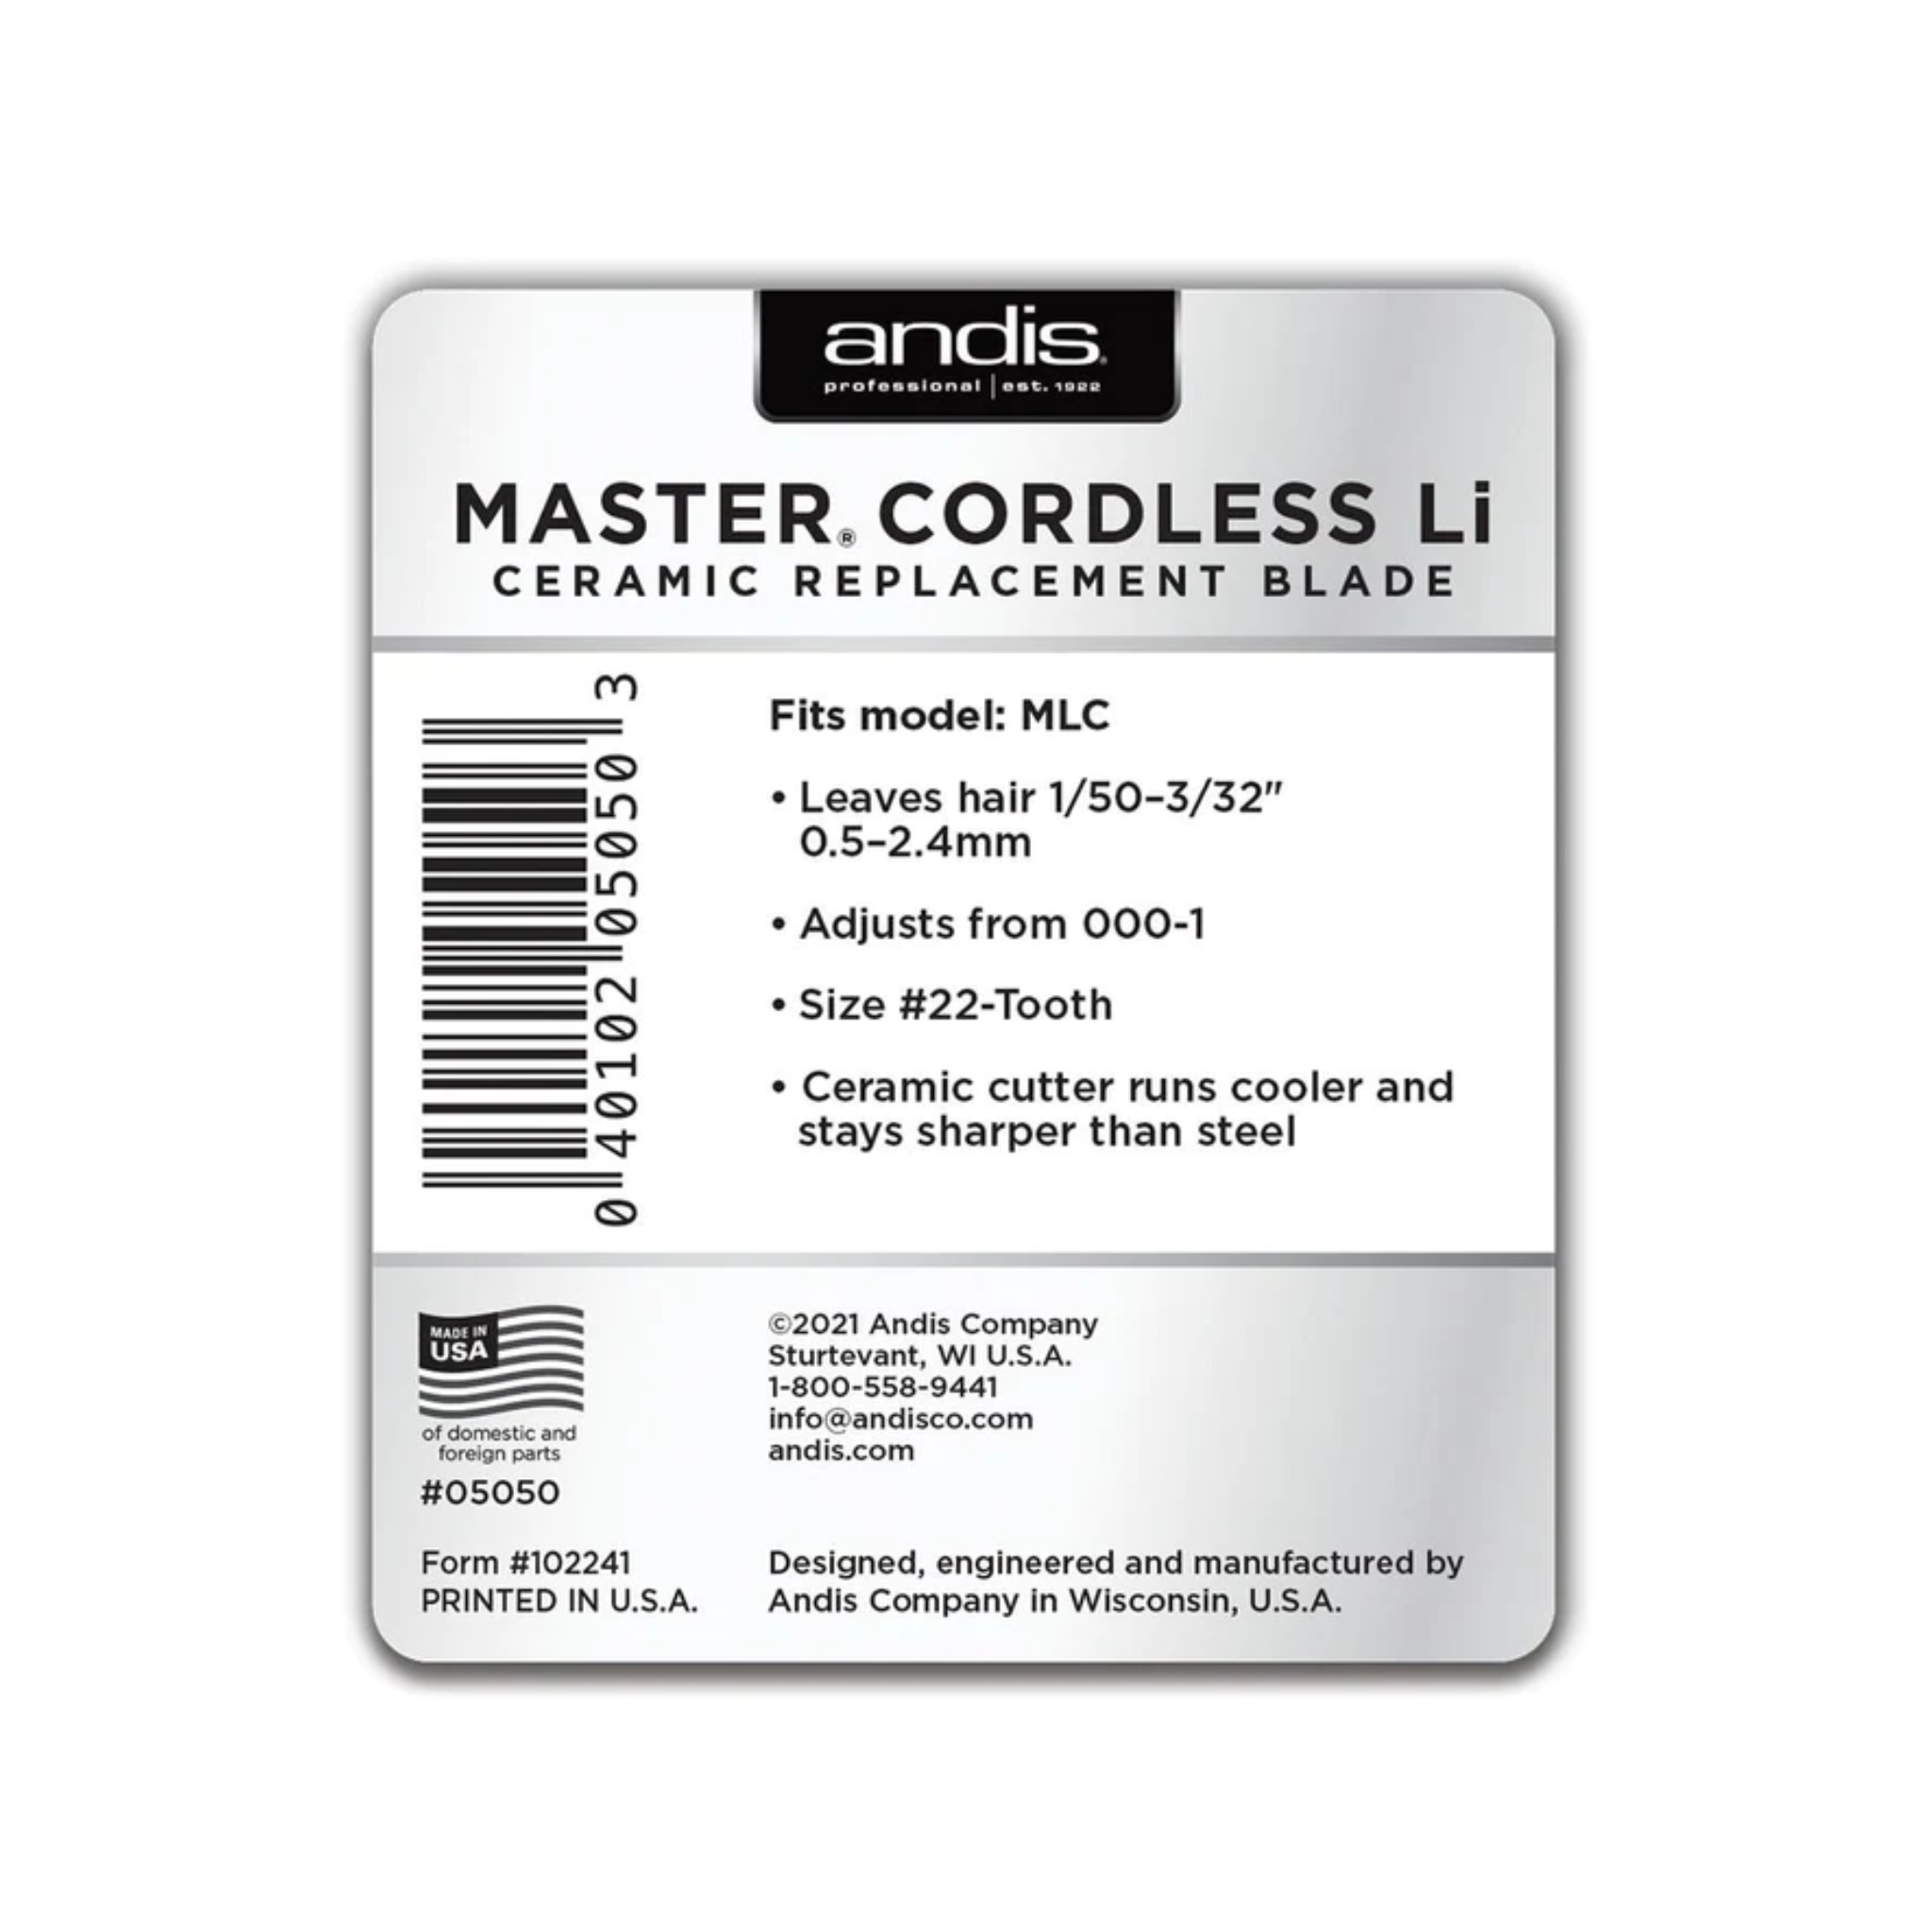 Master Cordless LI - Ceramic Replacement Blade